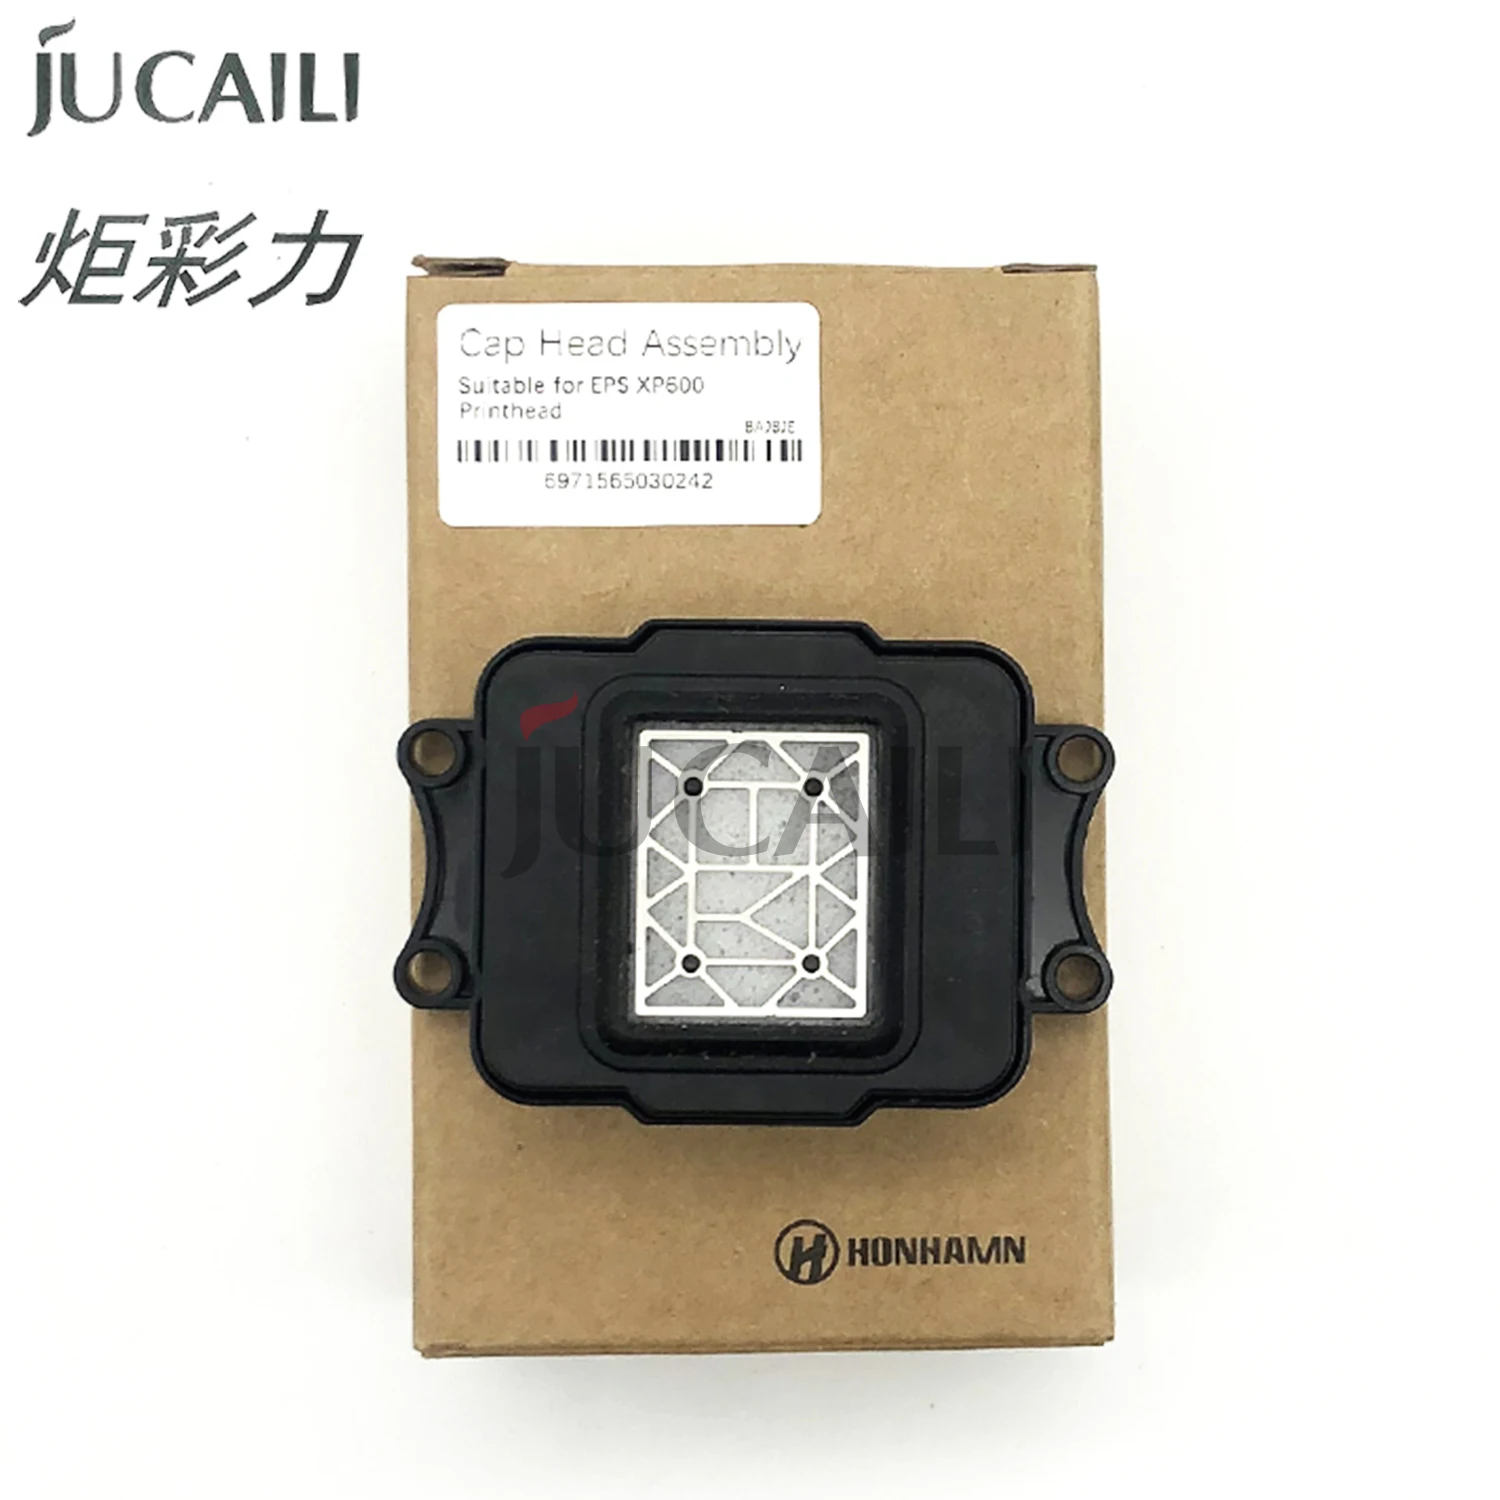 

Высококачественная Крышка для принтера Jucaili для Epson XP600 TX800 DX9 DX10, печатающая головка для Эко-сольвентного принтера, укупорочная станция